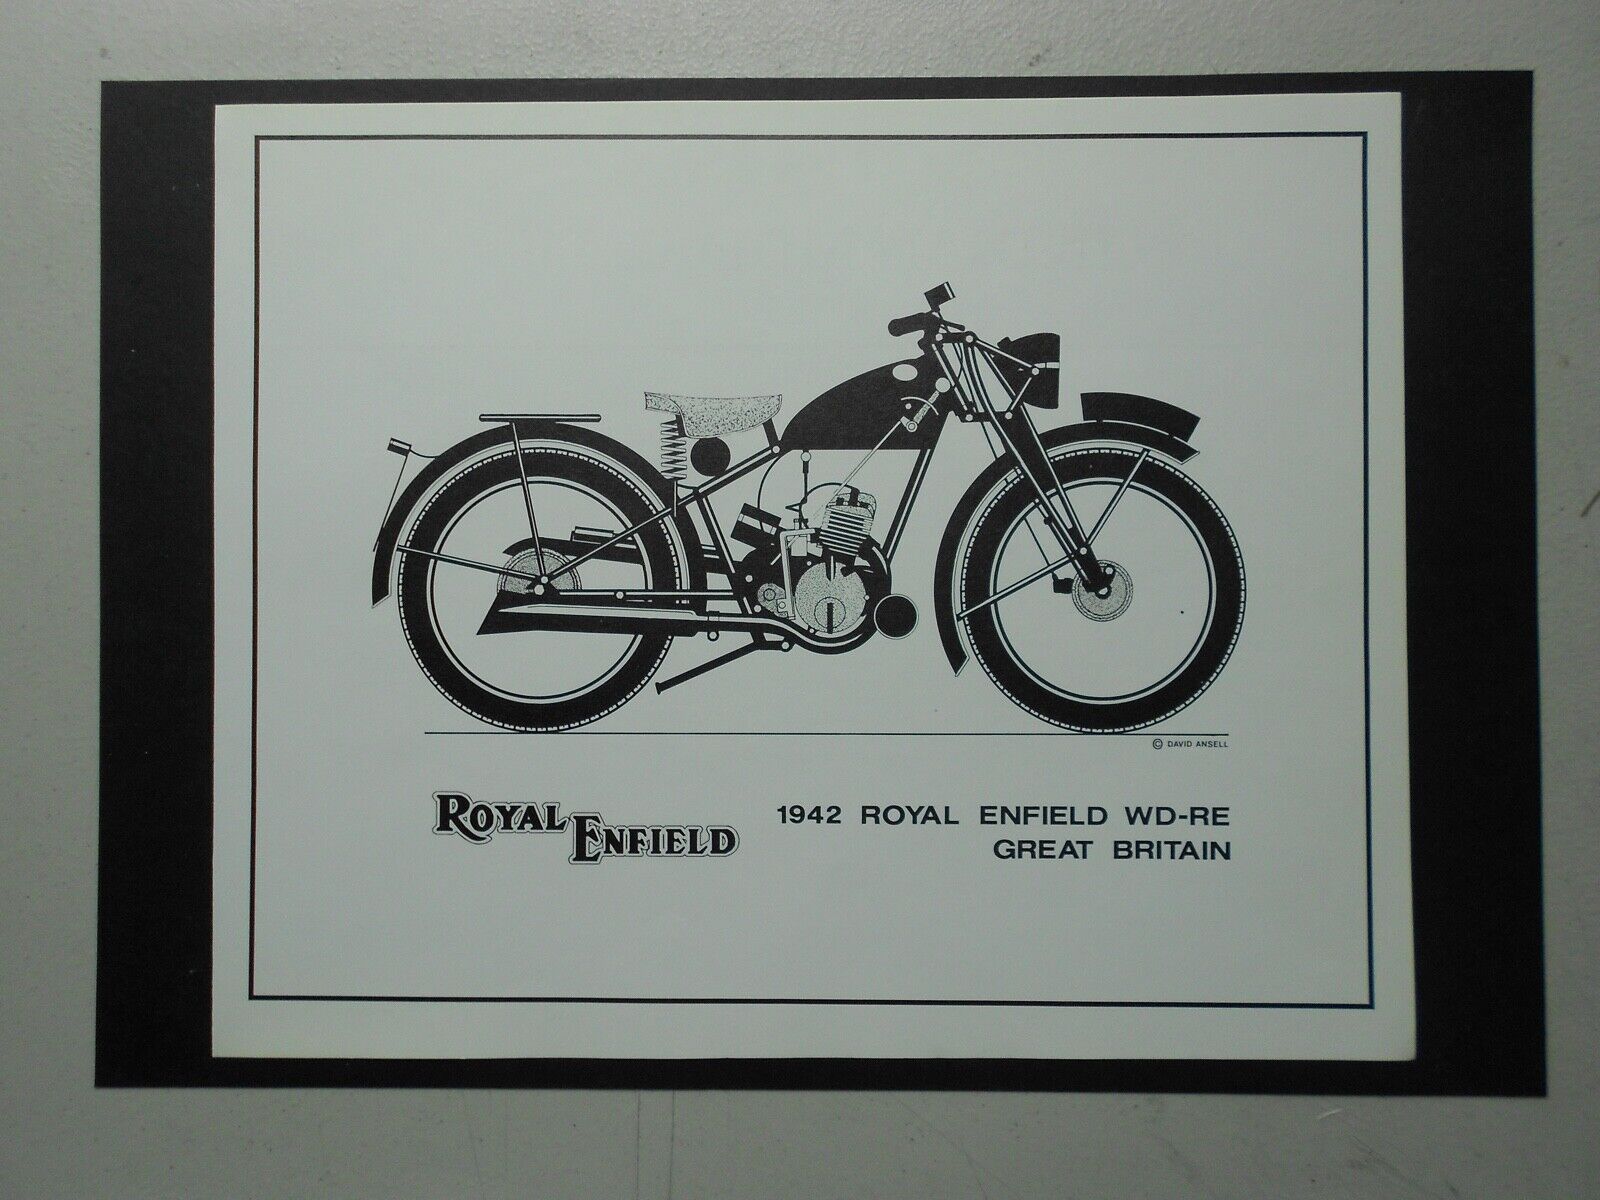 MILITARY VINTAGE/VETERAN MOTORCYCLE PRINT:1942 ROYAL ENFIELD WD-RE GREAT BRITAIN